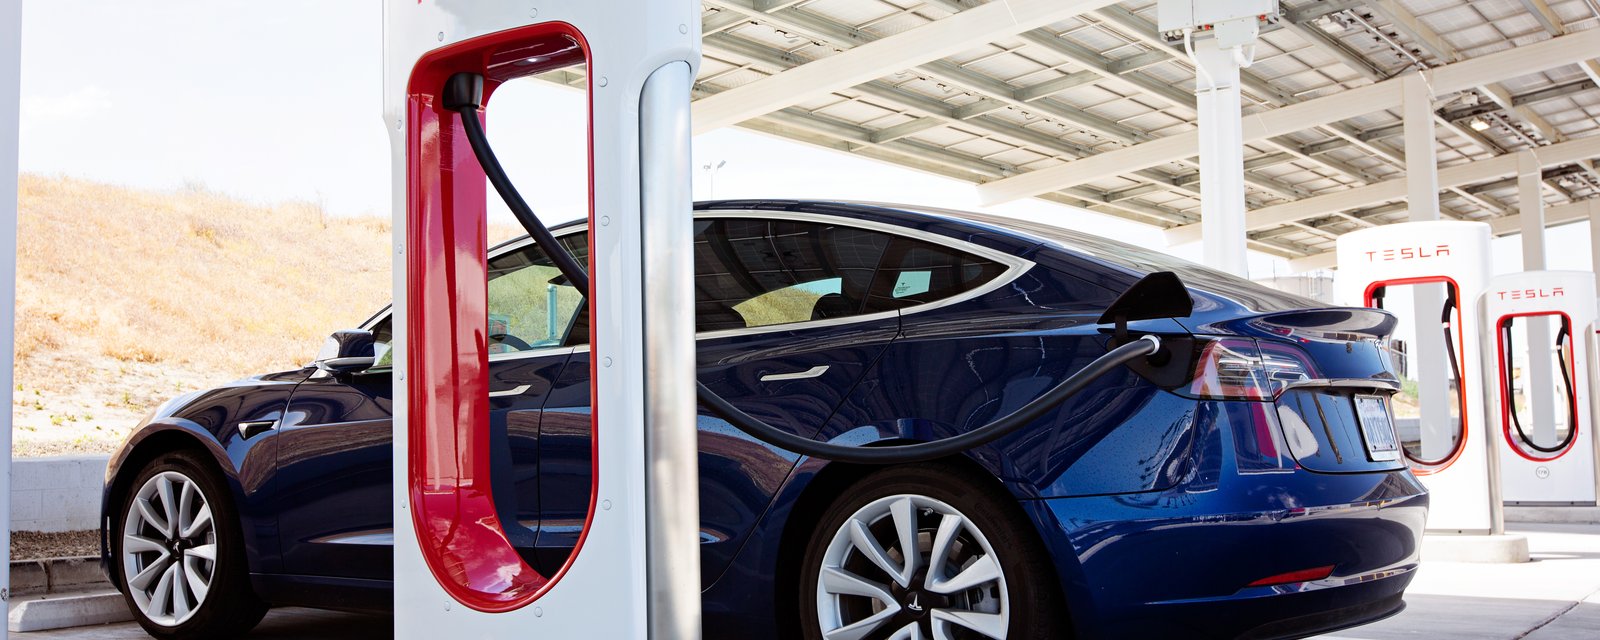 Tesla procède au rappel de plus d'un million de véhicules.